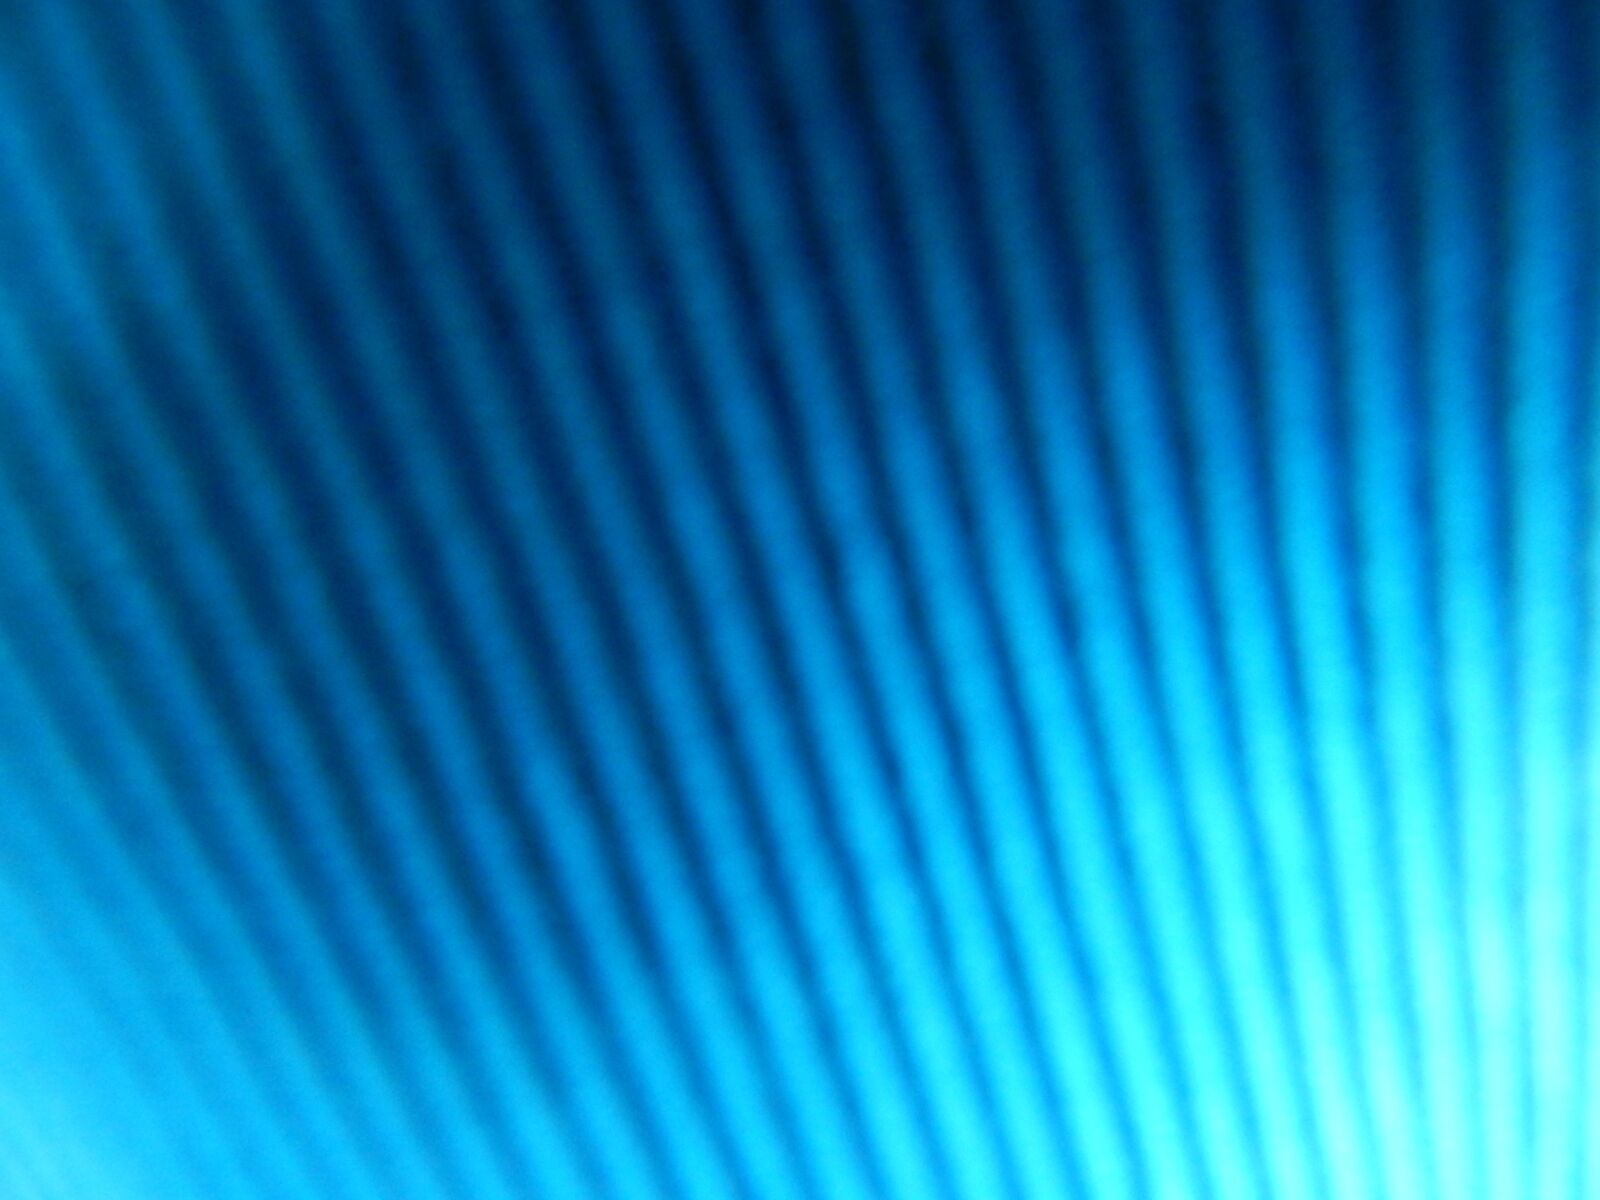 Nikon Coolpix L820 sample photo. Blue, color, calm photography